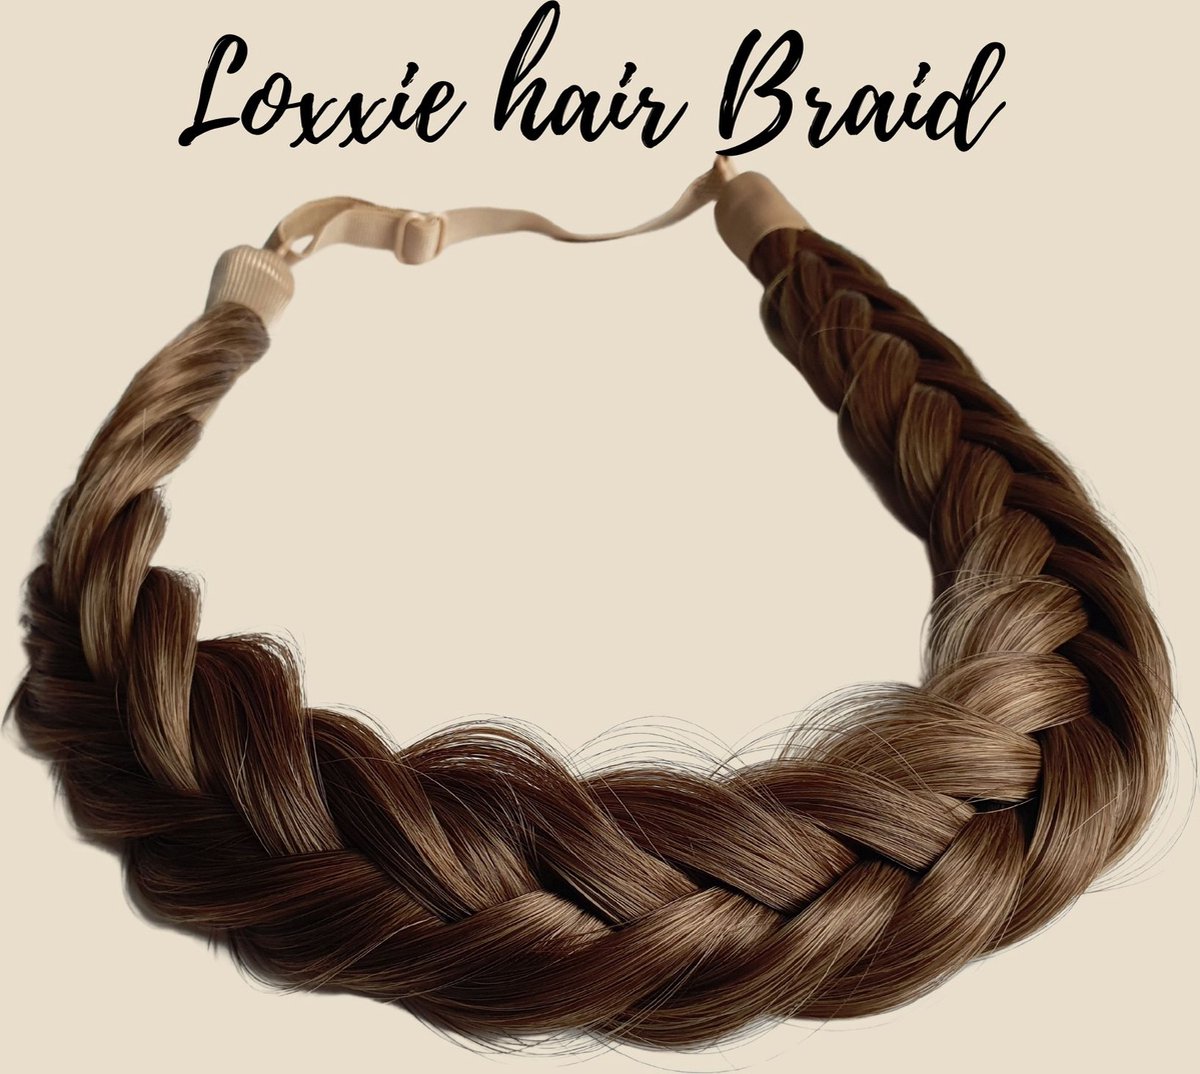 Loxxie® haarband met vlecht haar extensions braid verstelbaar universele pasvorm Licht bruin met goudblond